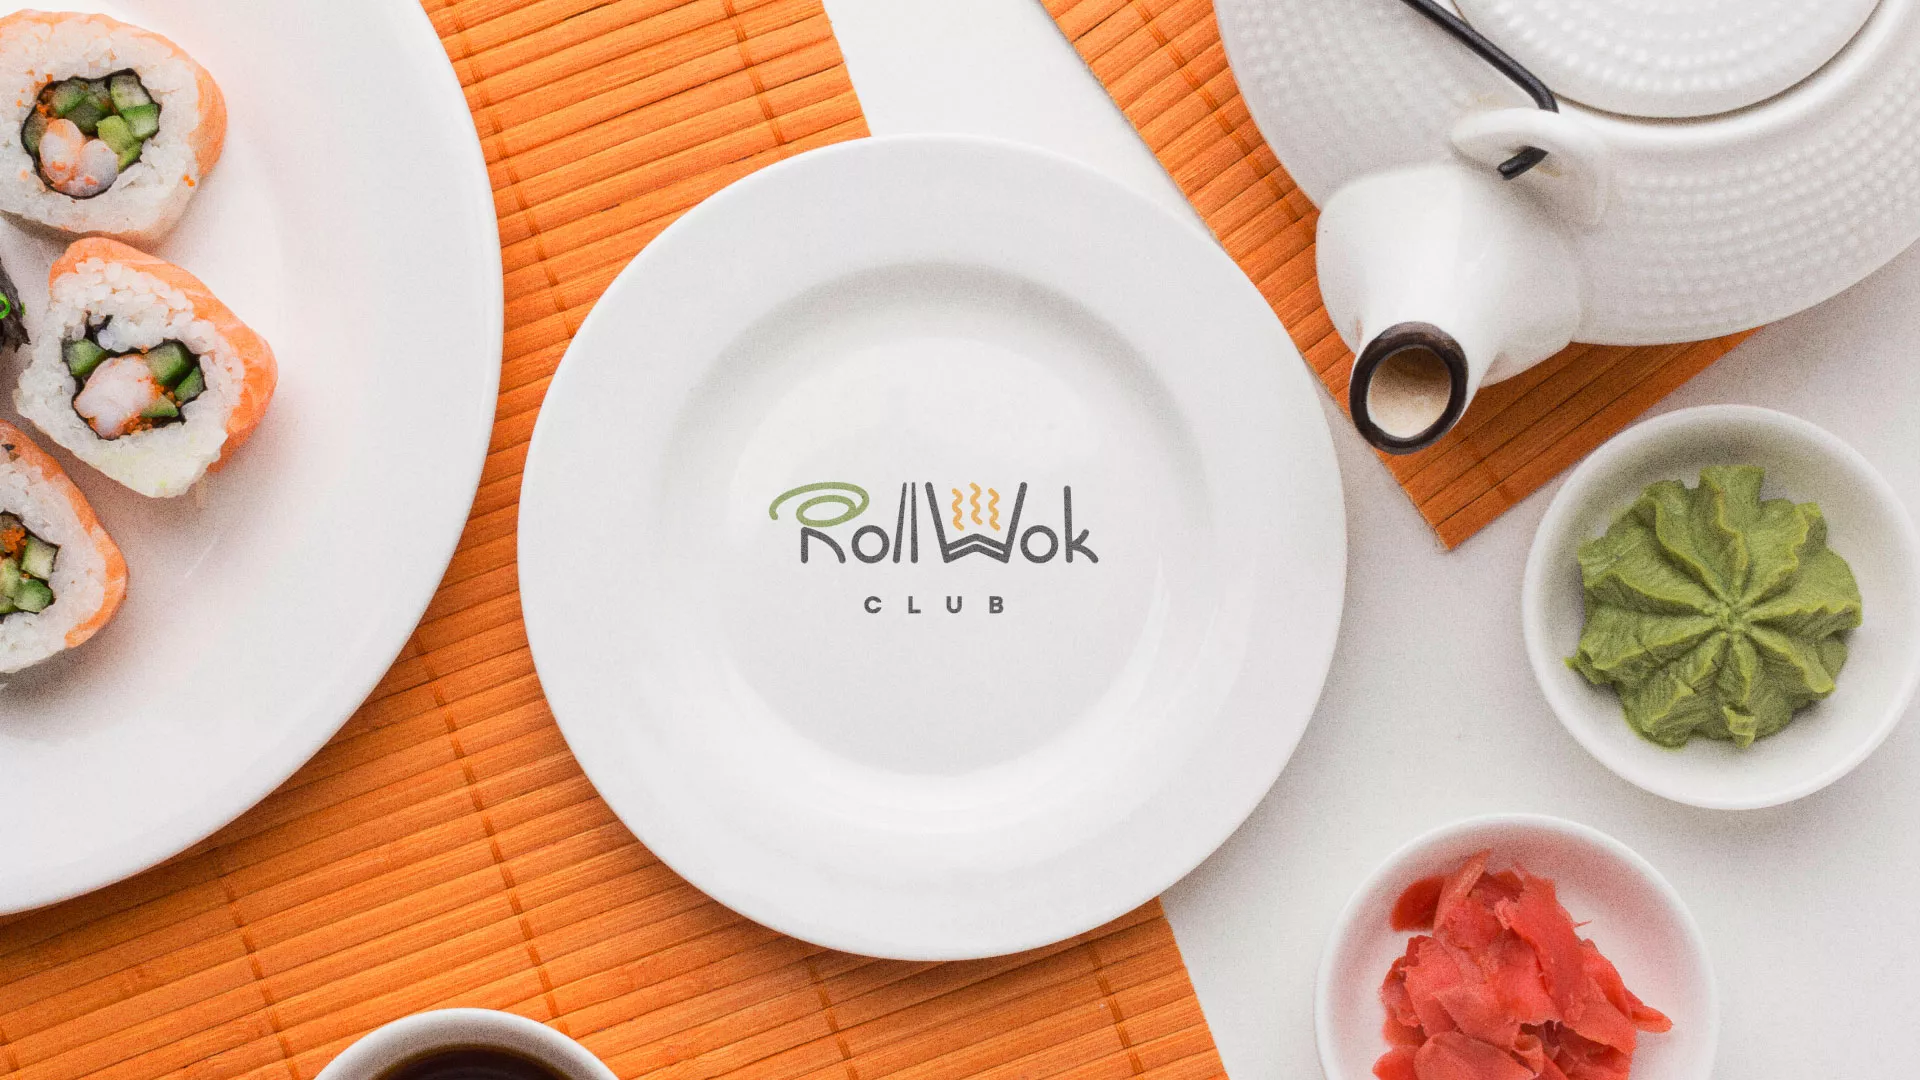 Разработка логотипа и фирменного стиля суши-бара «Roll Wok Club» в Высоцке